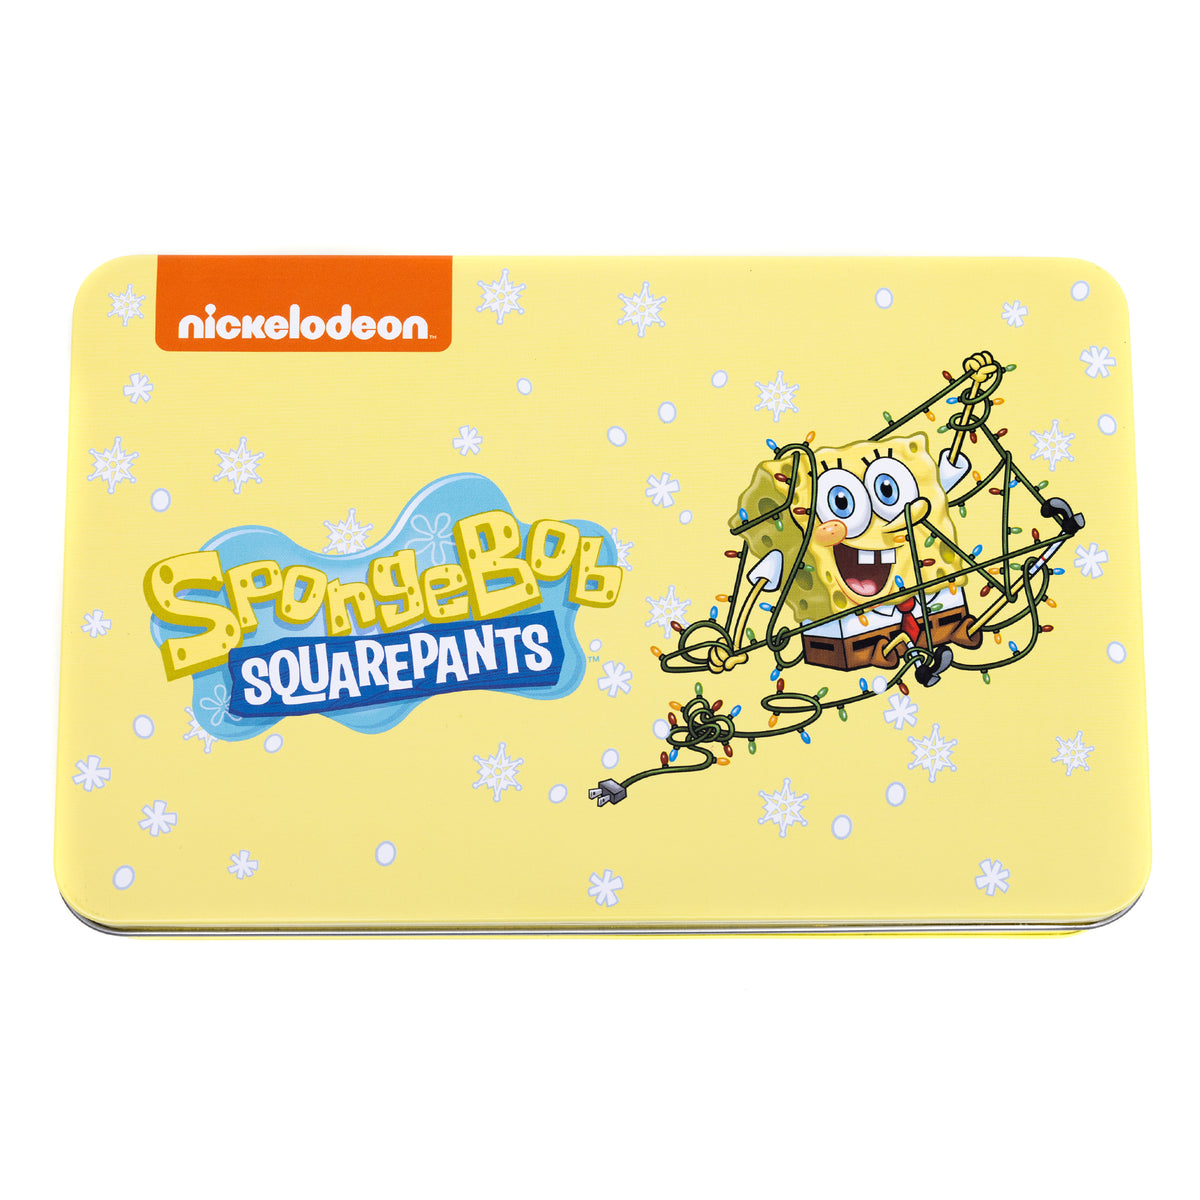 Spongebob Squarepants 4 piece gift set - Bi Fold Wallet, Lanyard, Bottle Opener Keychain &amp; Collectible Tin